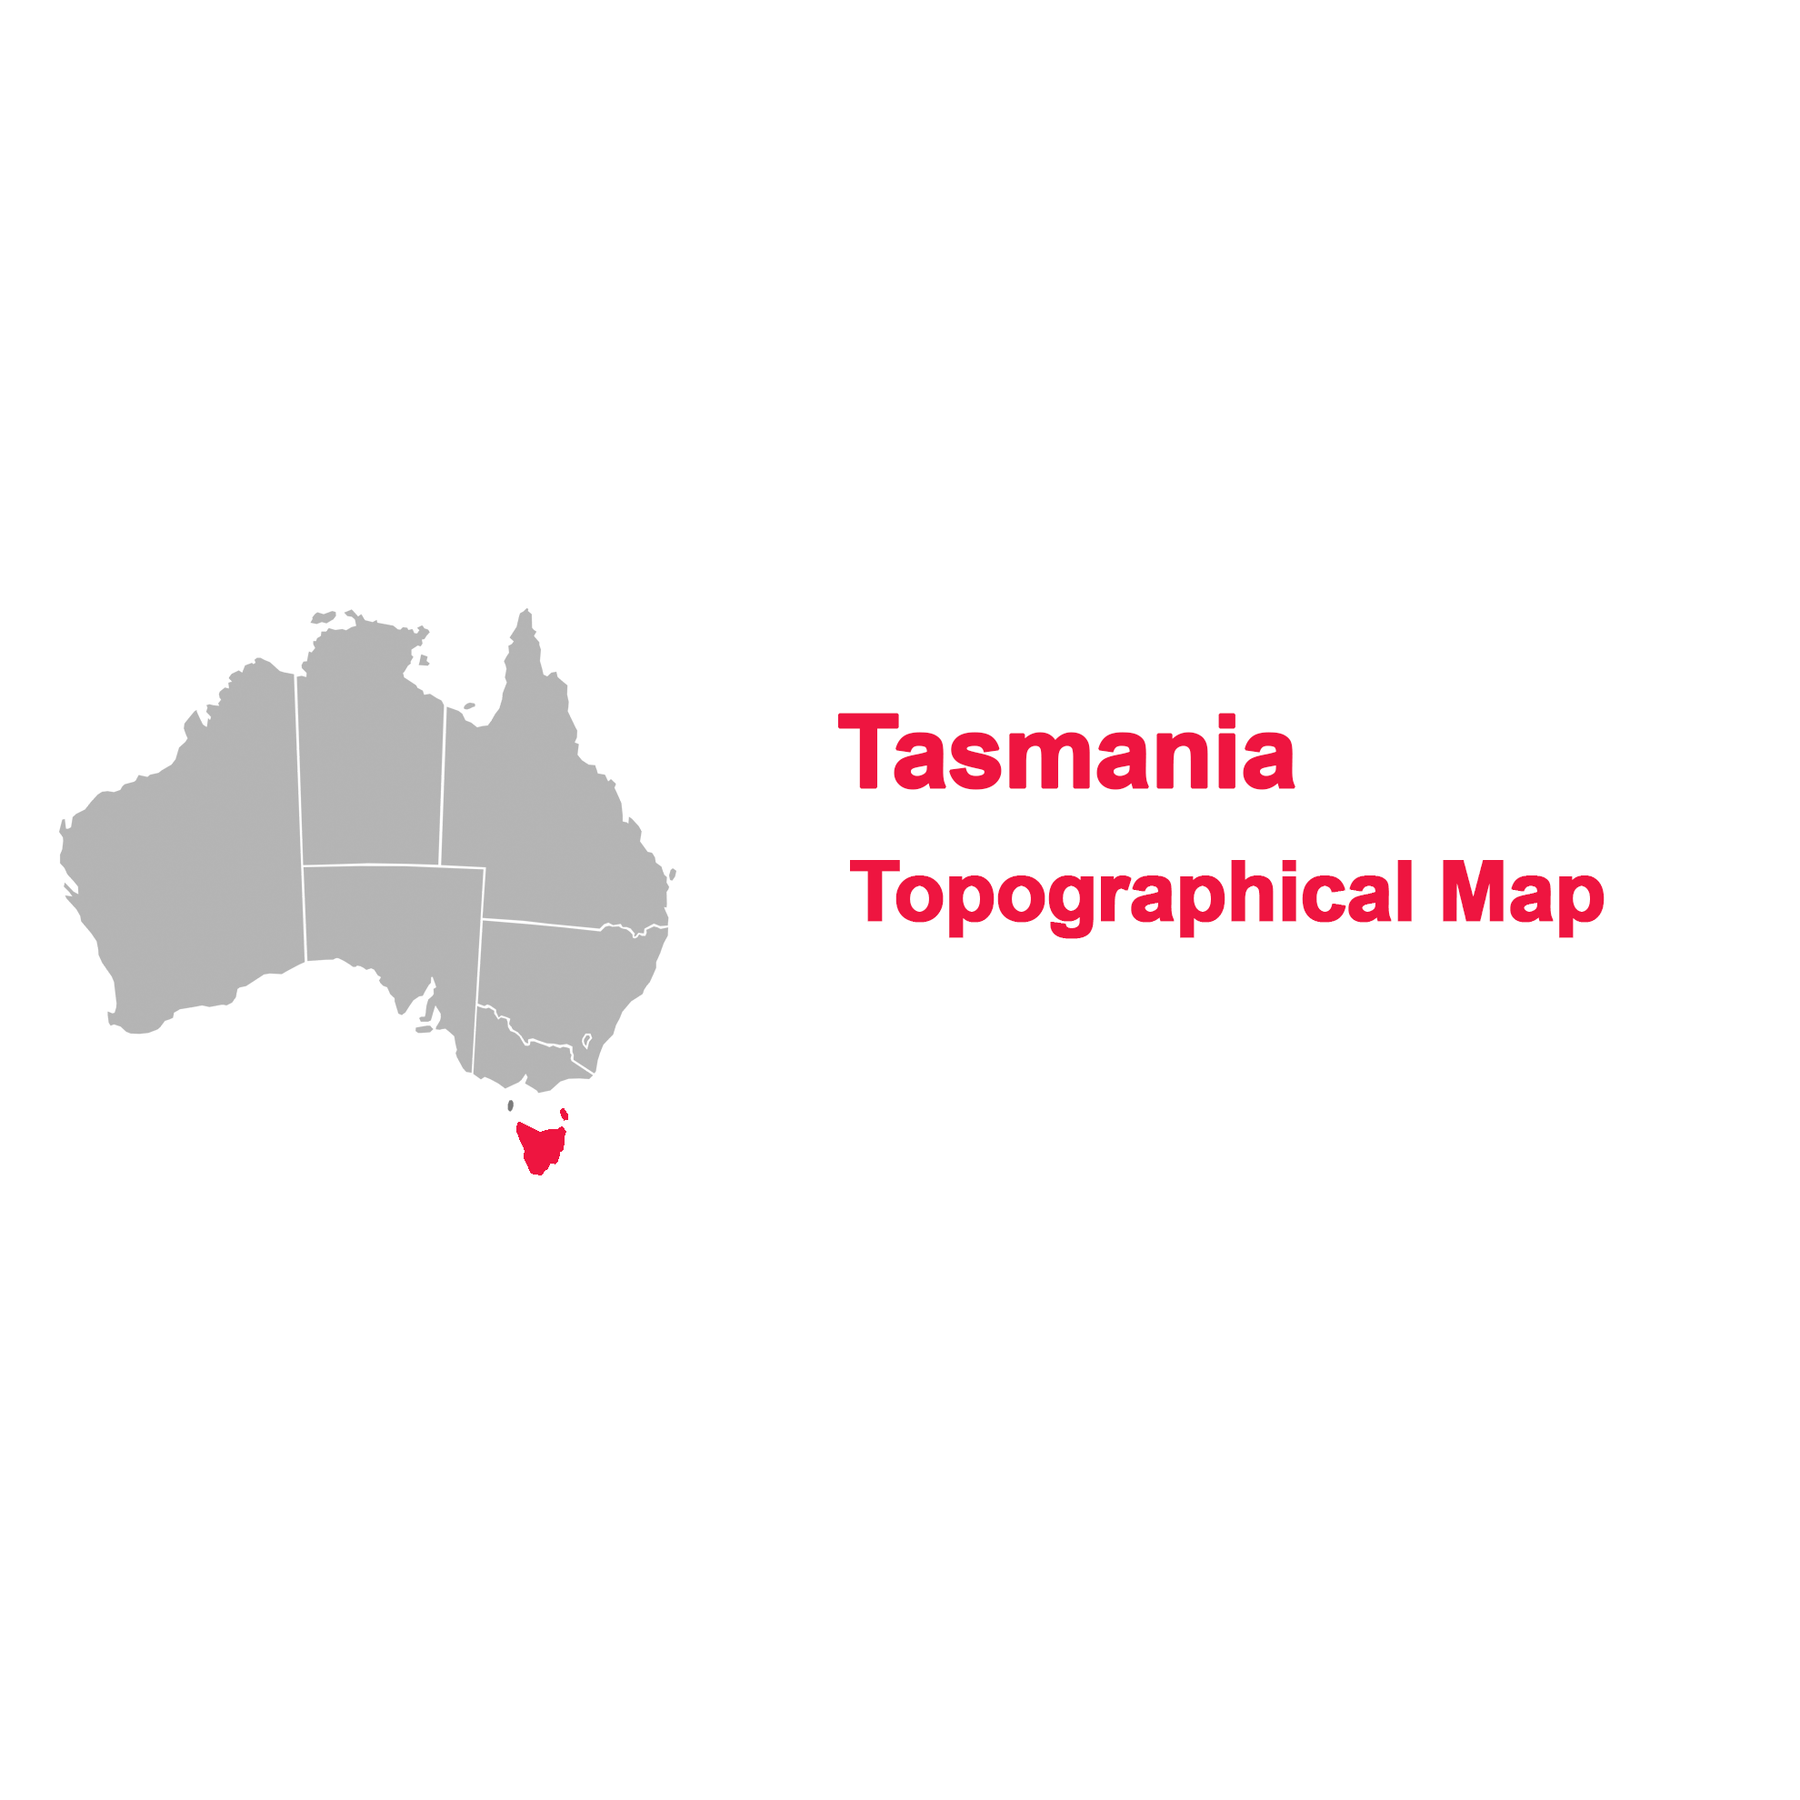 Tasmaina topograpihcal map